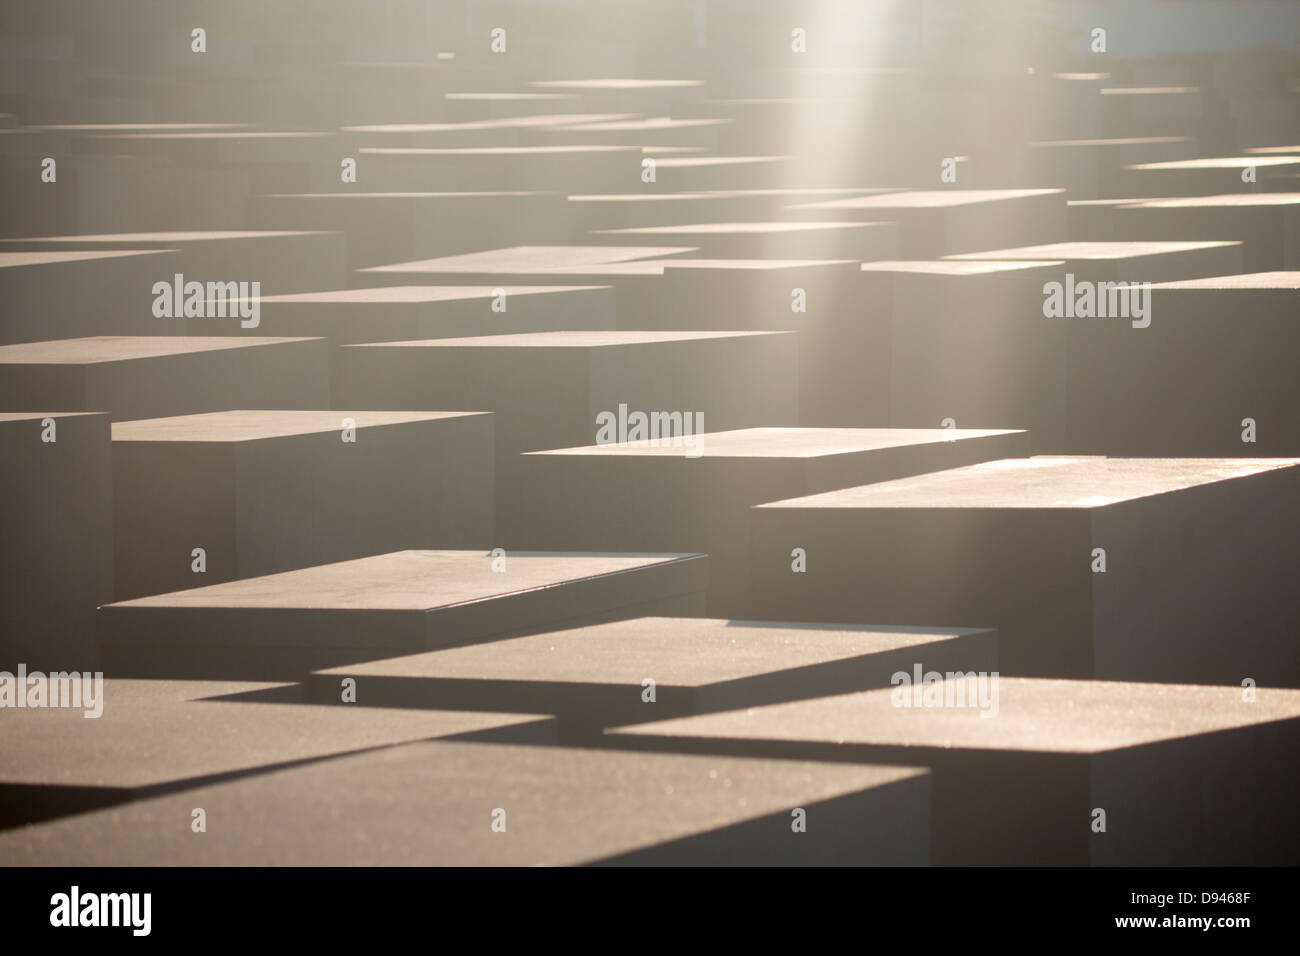 Mémorial aux Juifs assassinés d'Europe avec des rayons de soleil qui brille vers le bas sur des blocs de monument Berlin Allemagne Banque D'Images